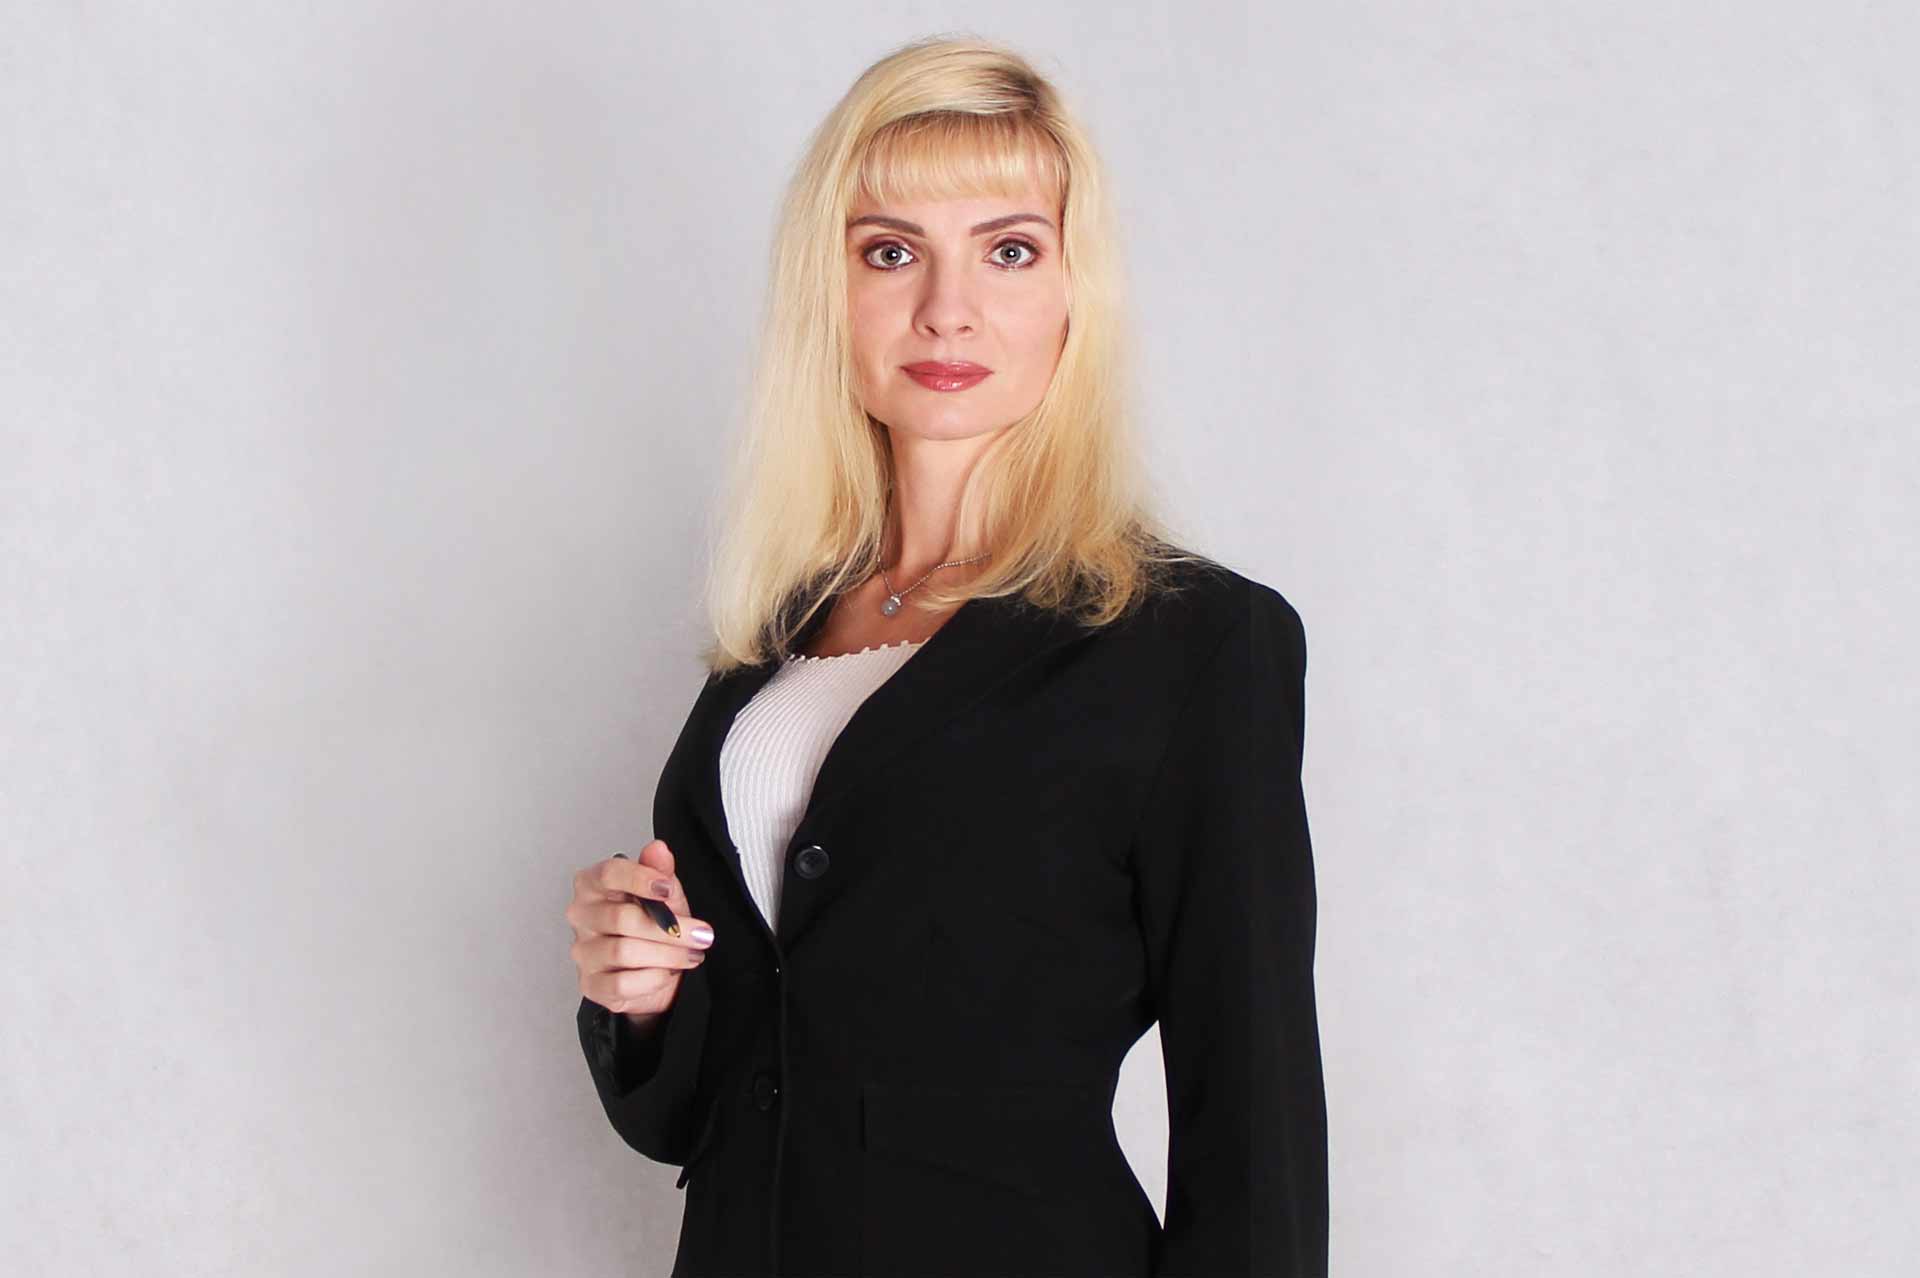 Вера Бокарева. Бизнес-тренер и  консультант в области продаж, маркетинга, профессиональной и личной эффективности